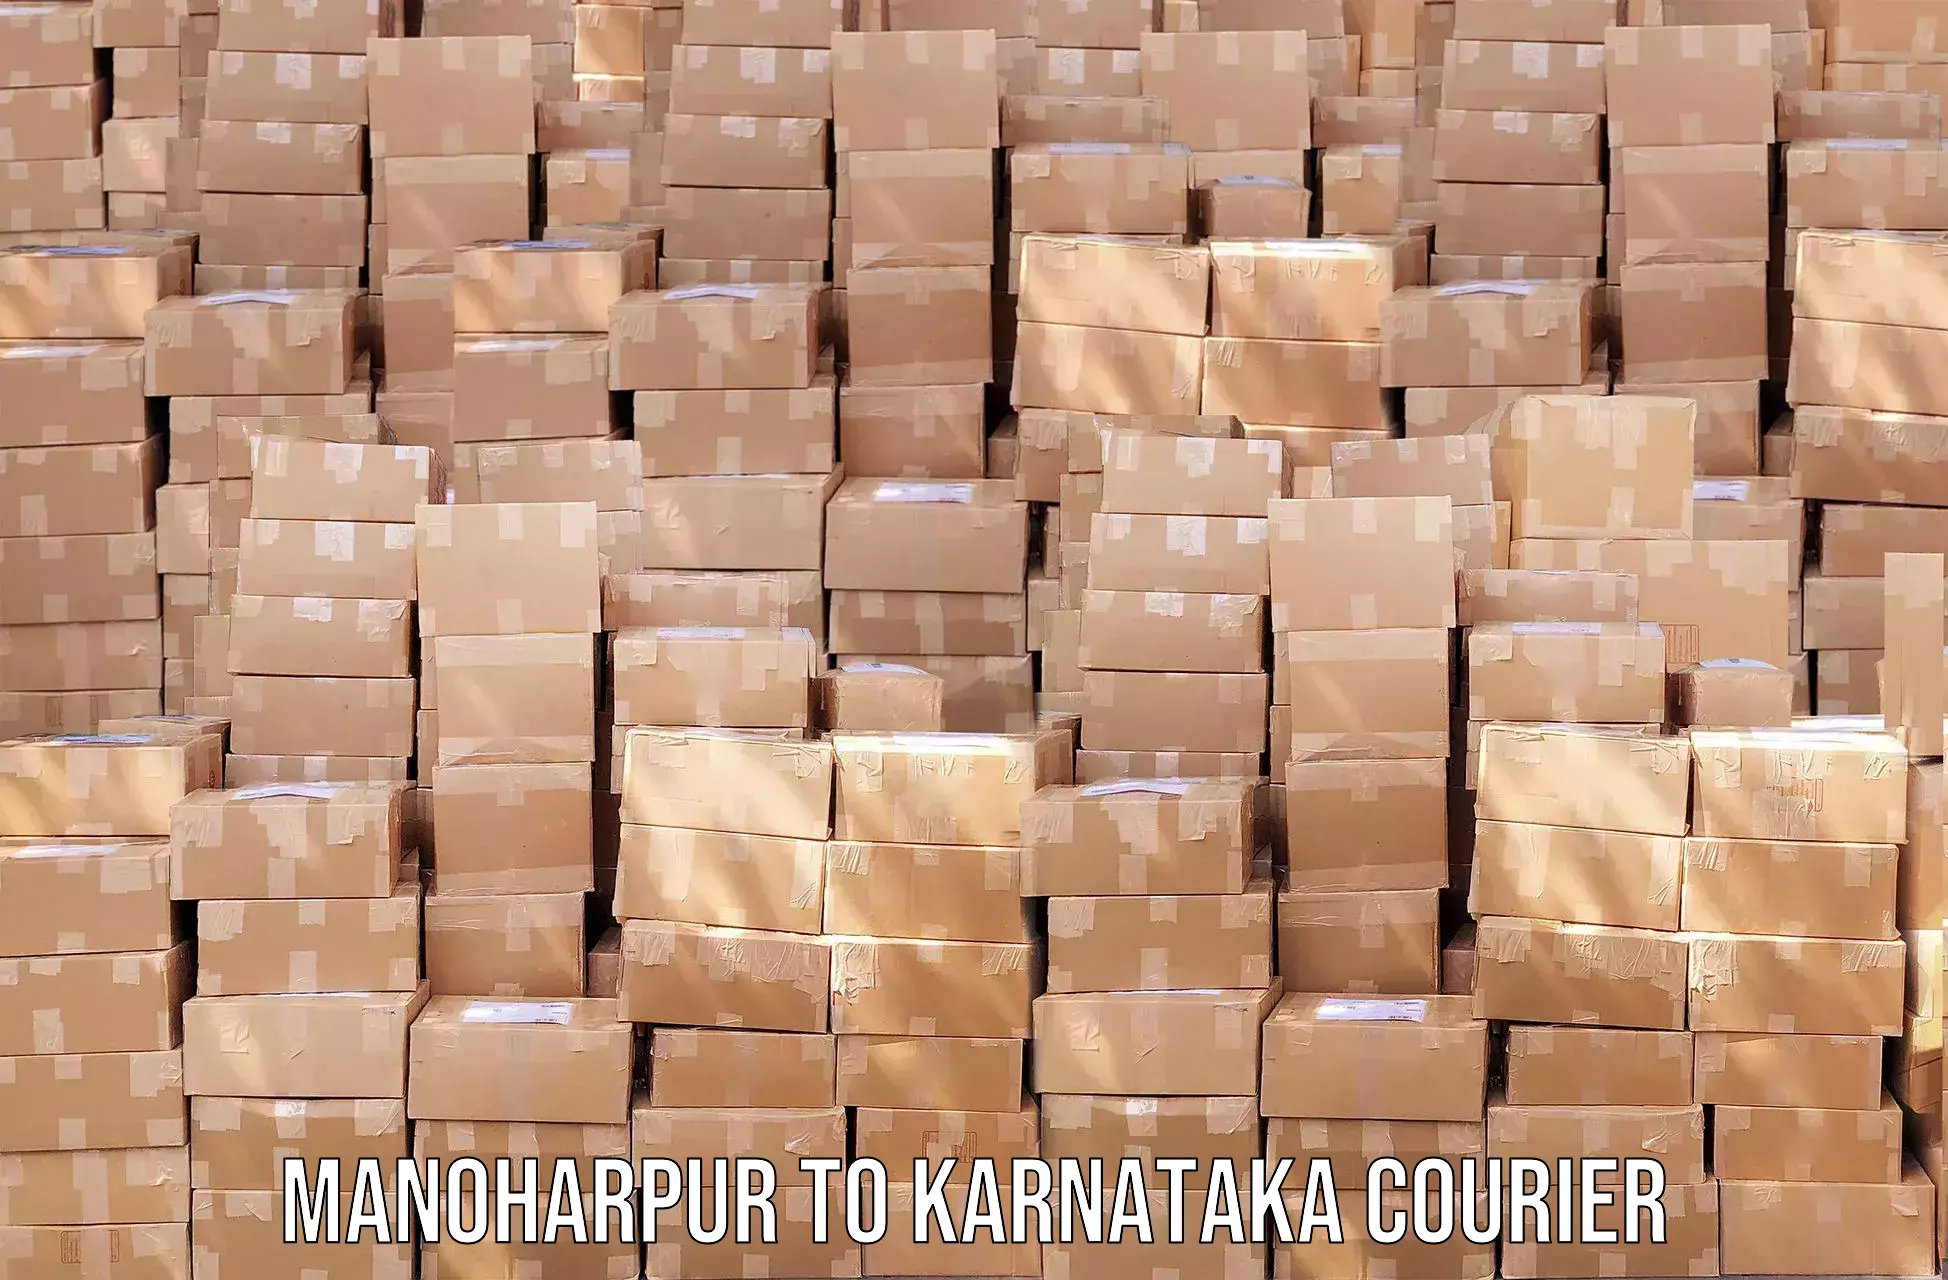 Courier app Manoharpur to Pavagada